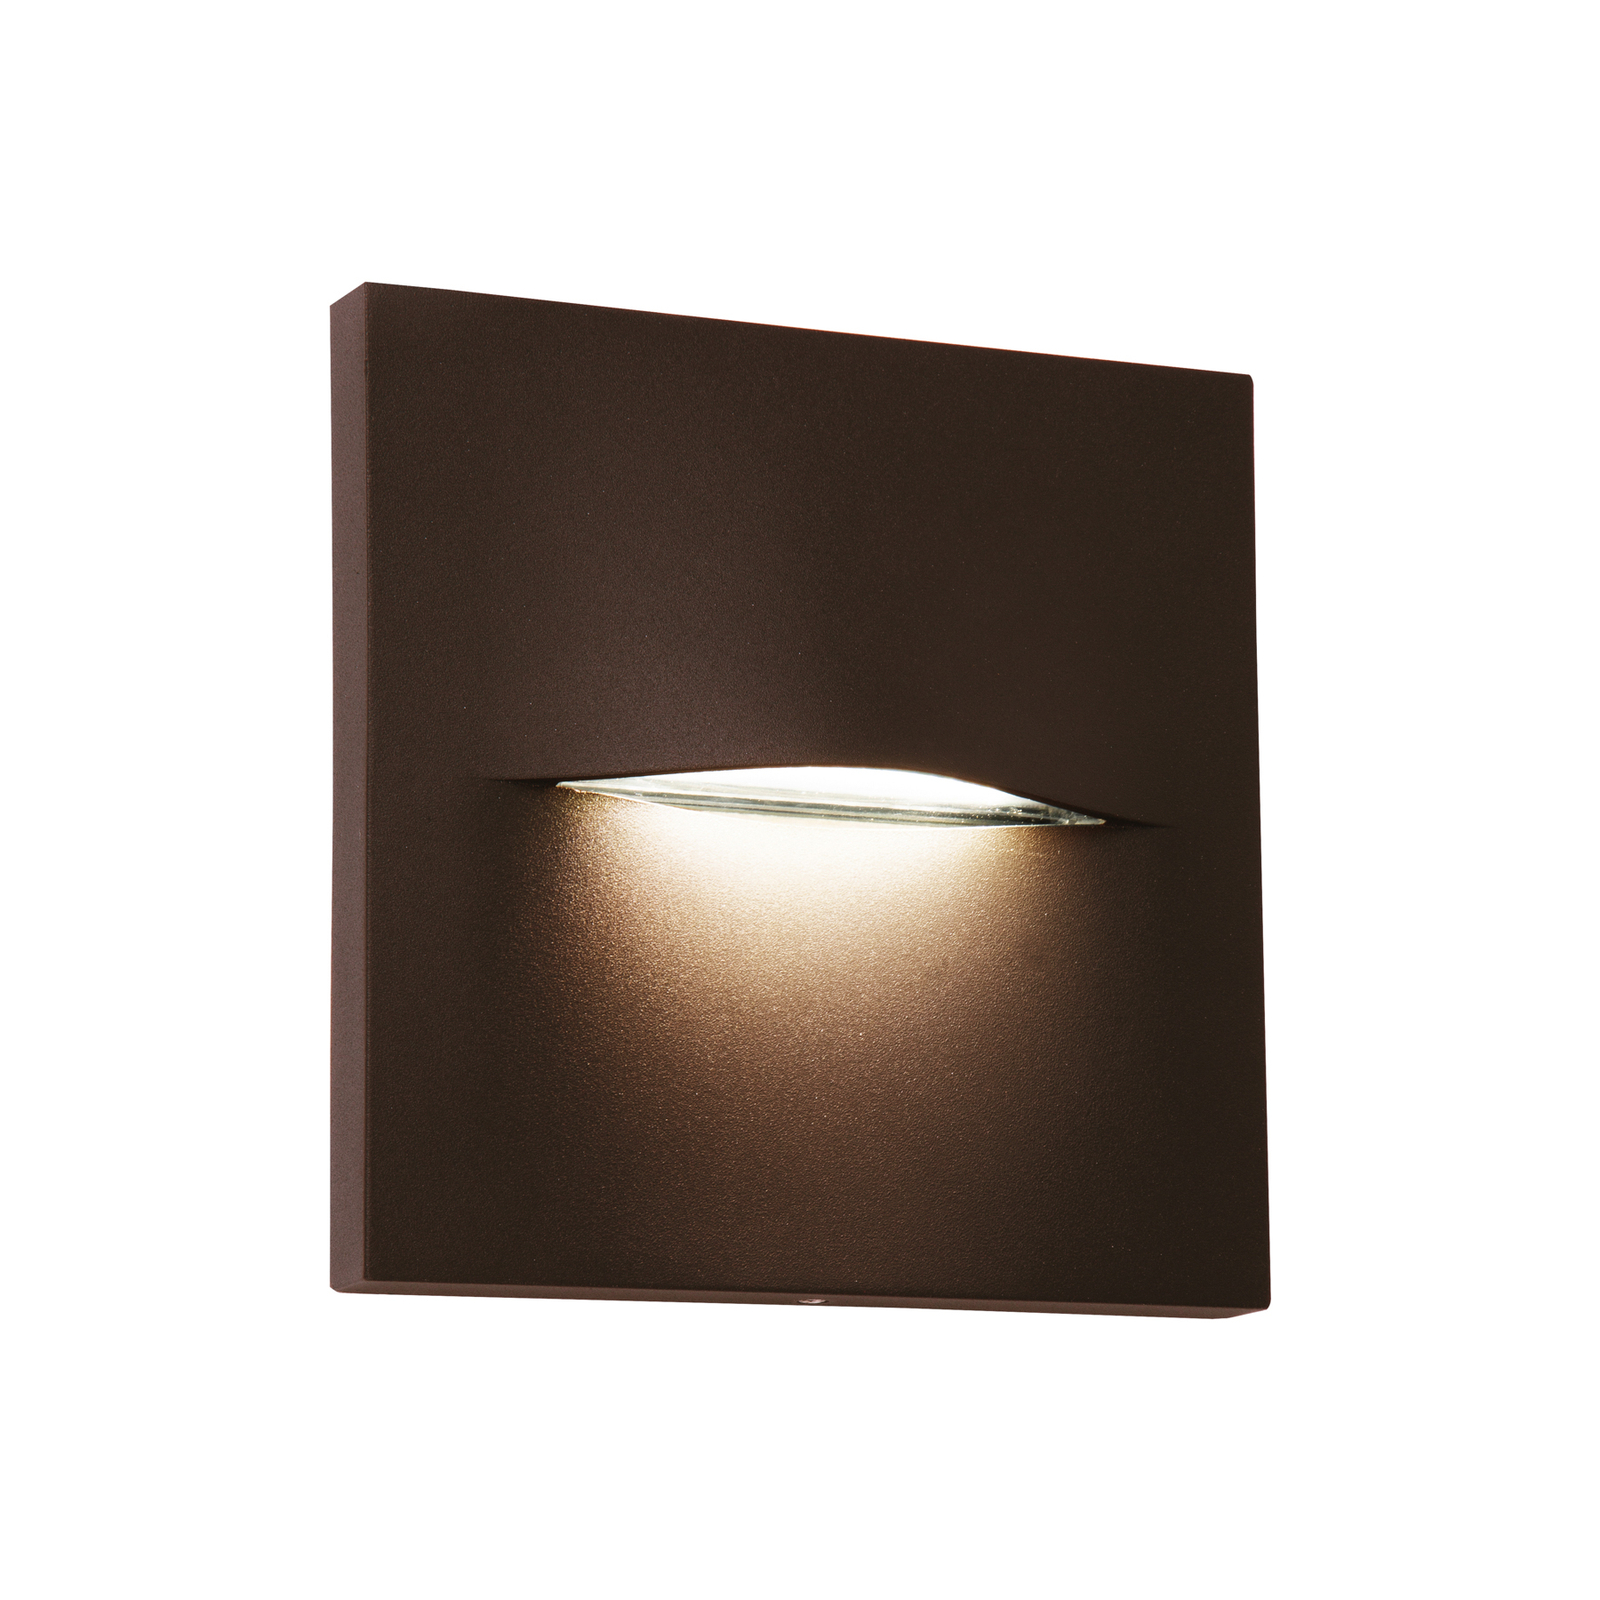 LED utendørs vegglampe Vita, rustbrun, 14 x 14 cm